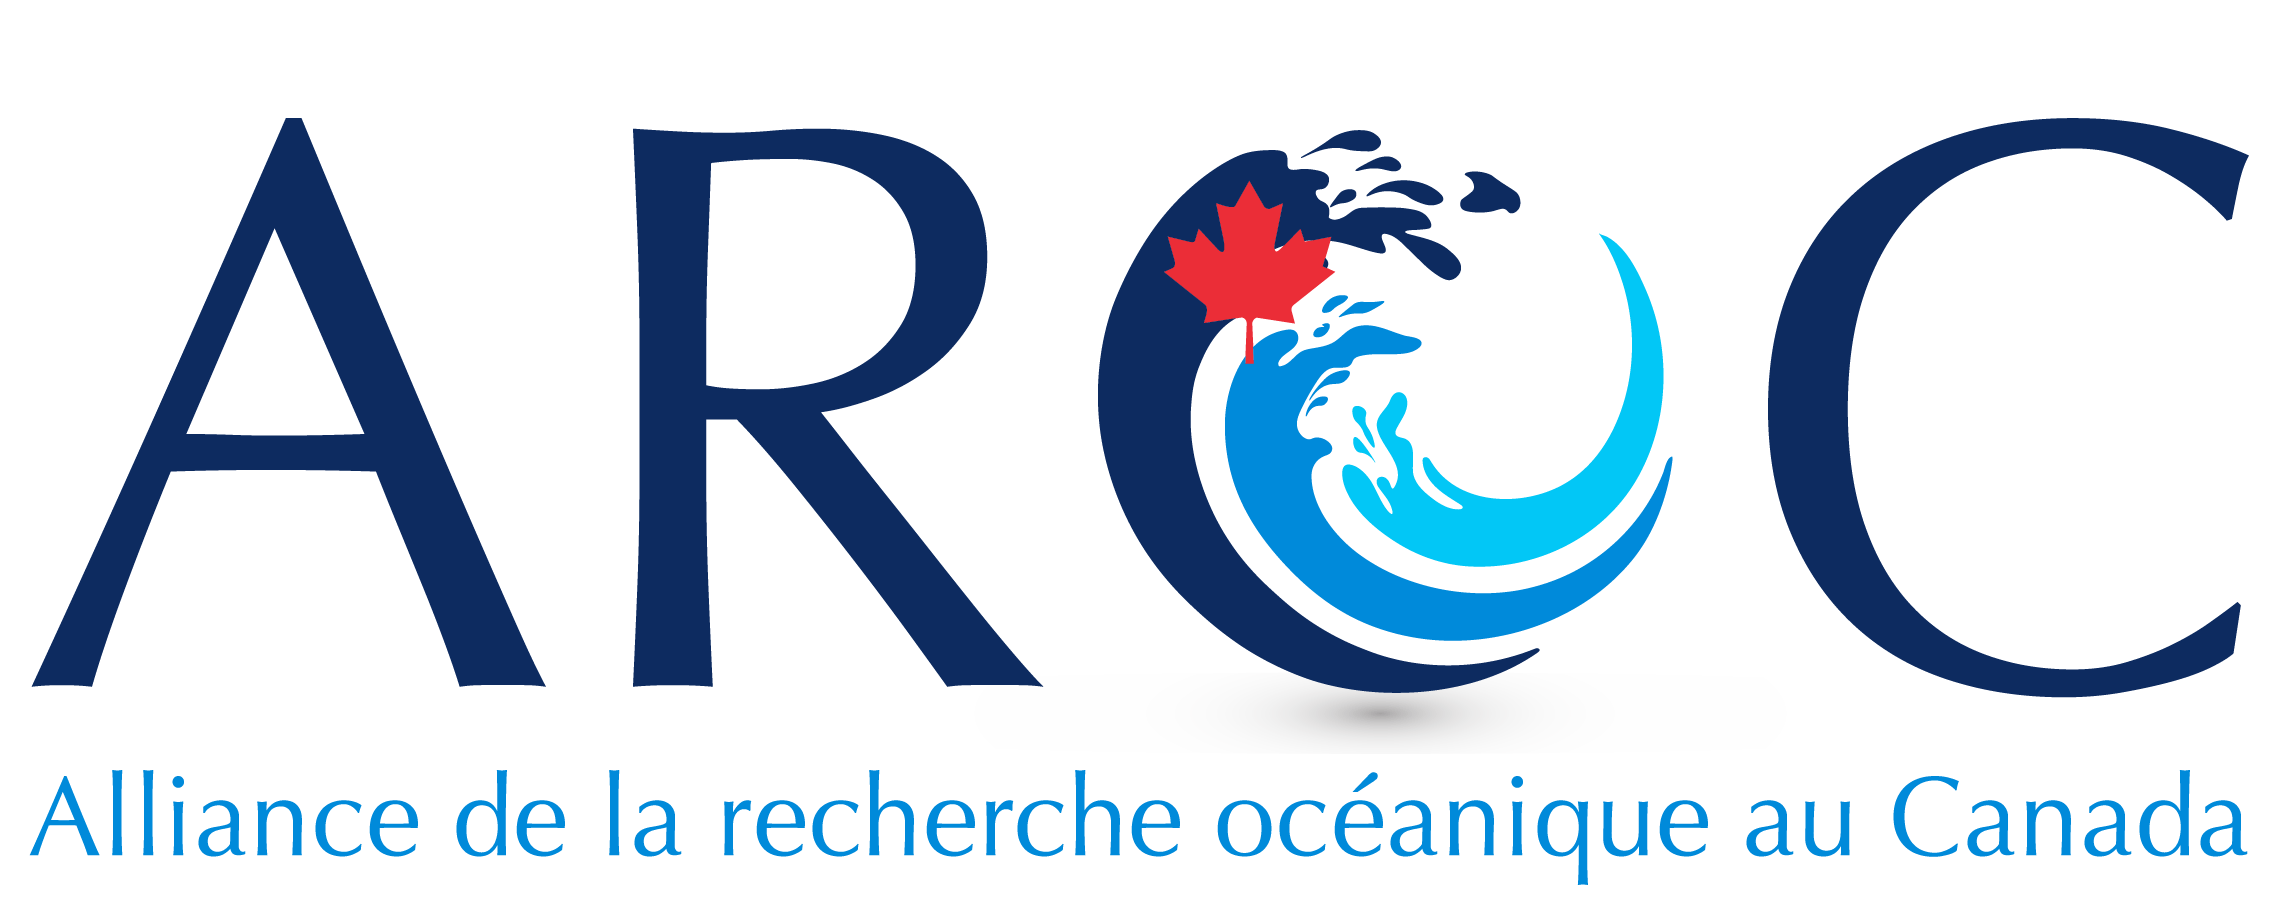 Logo de l'AROC avec une vague stylisée sur trois tons de bleu et la feuille d'érable rouge du Canada où l'on peut lire « Alliance de la recherche océanique au Canada ».